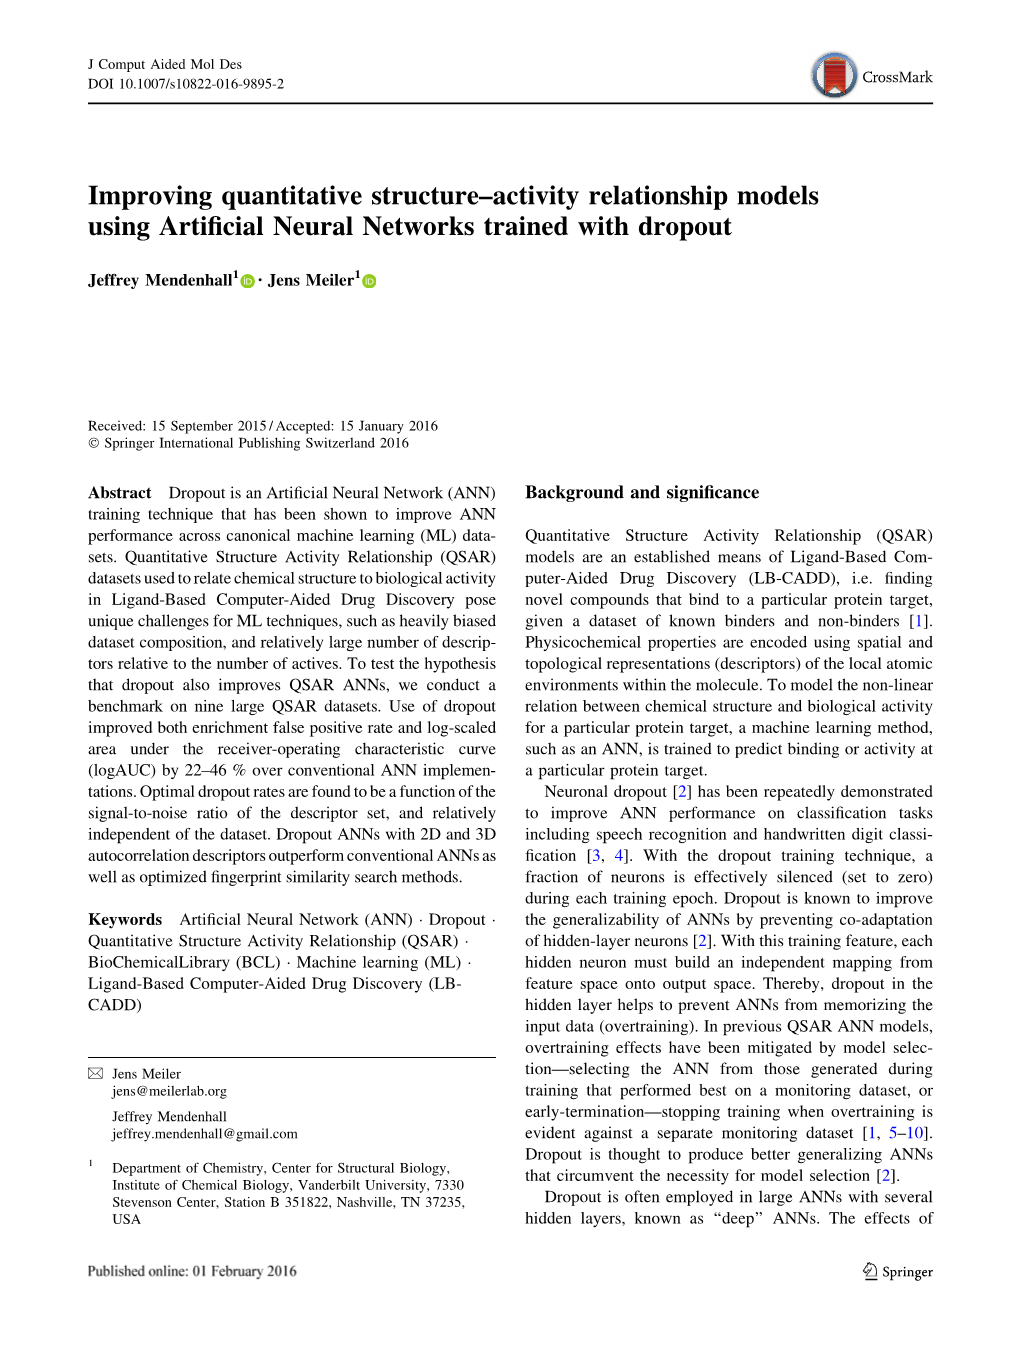 Jens Meiler Improving Quantitative Structure-Activity Relationship